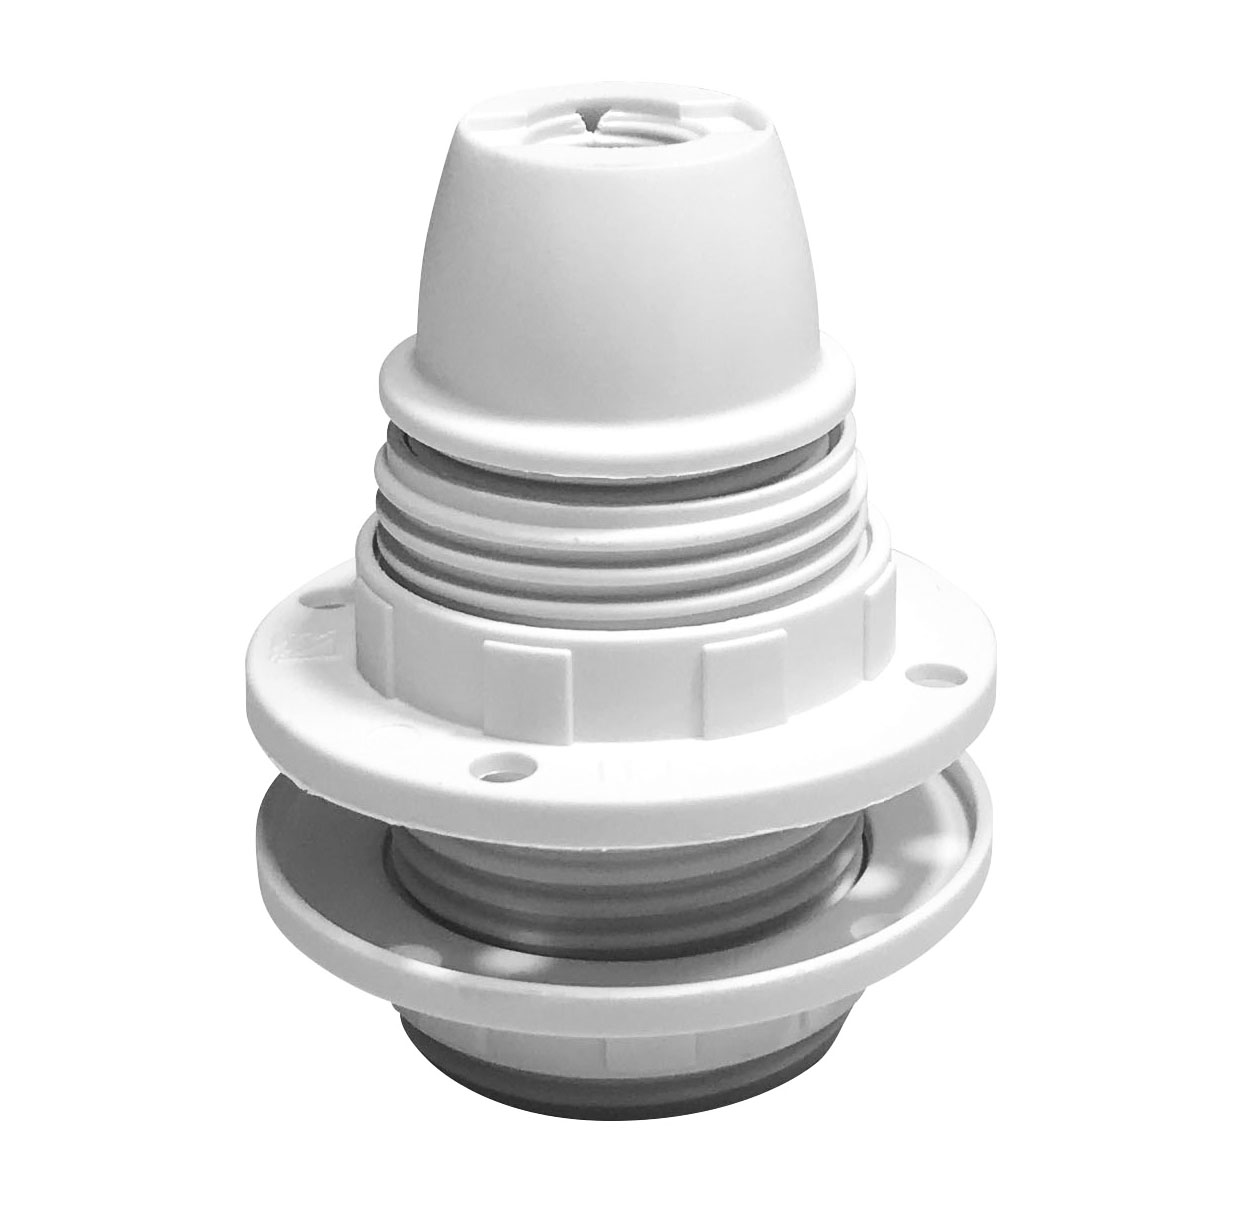 Accesorios para crear tu propia lámpara: los casquillos y portalámparas de termoplástico